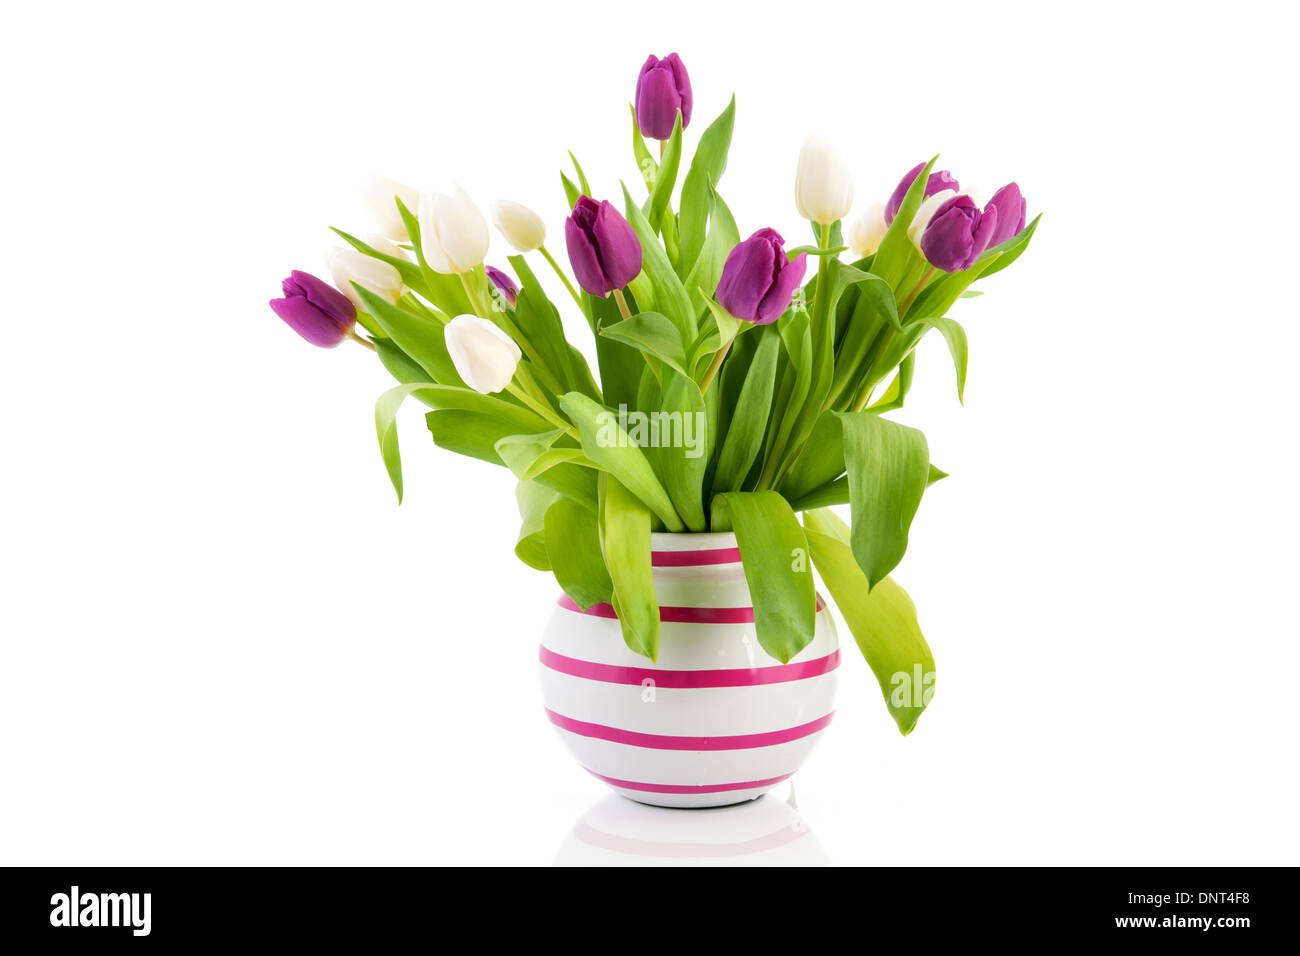 Tulipes violet et blanc dans un vase Banque D'Images